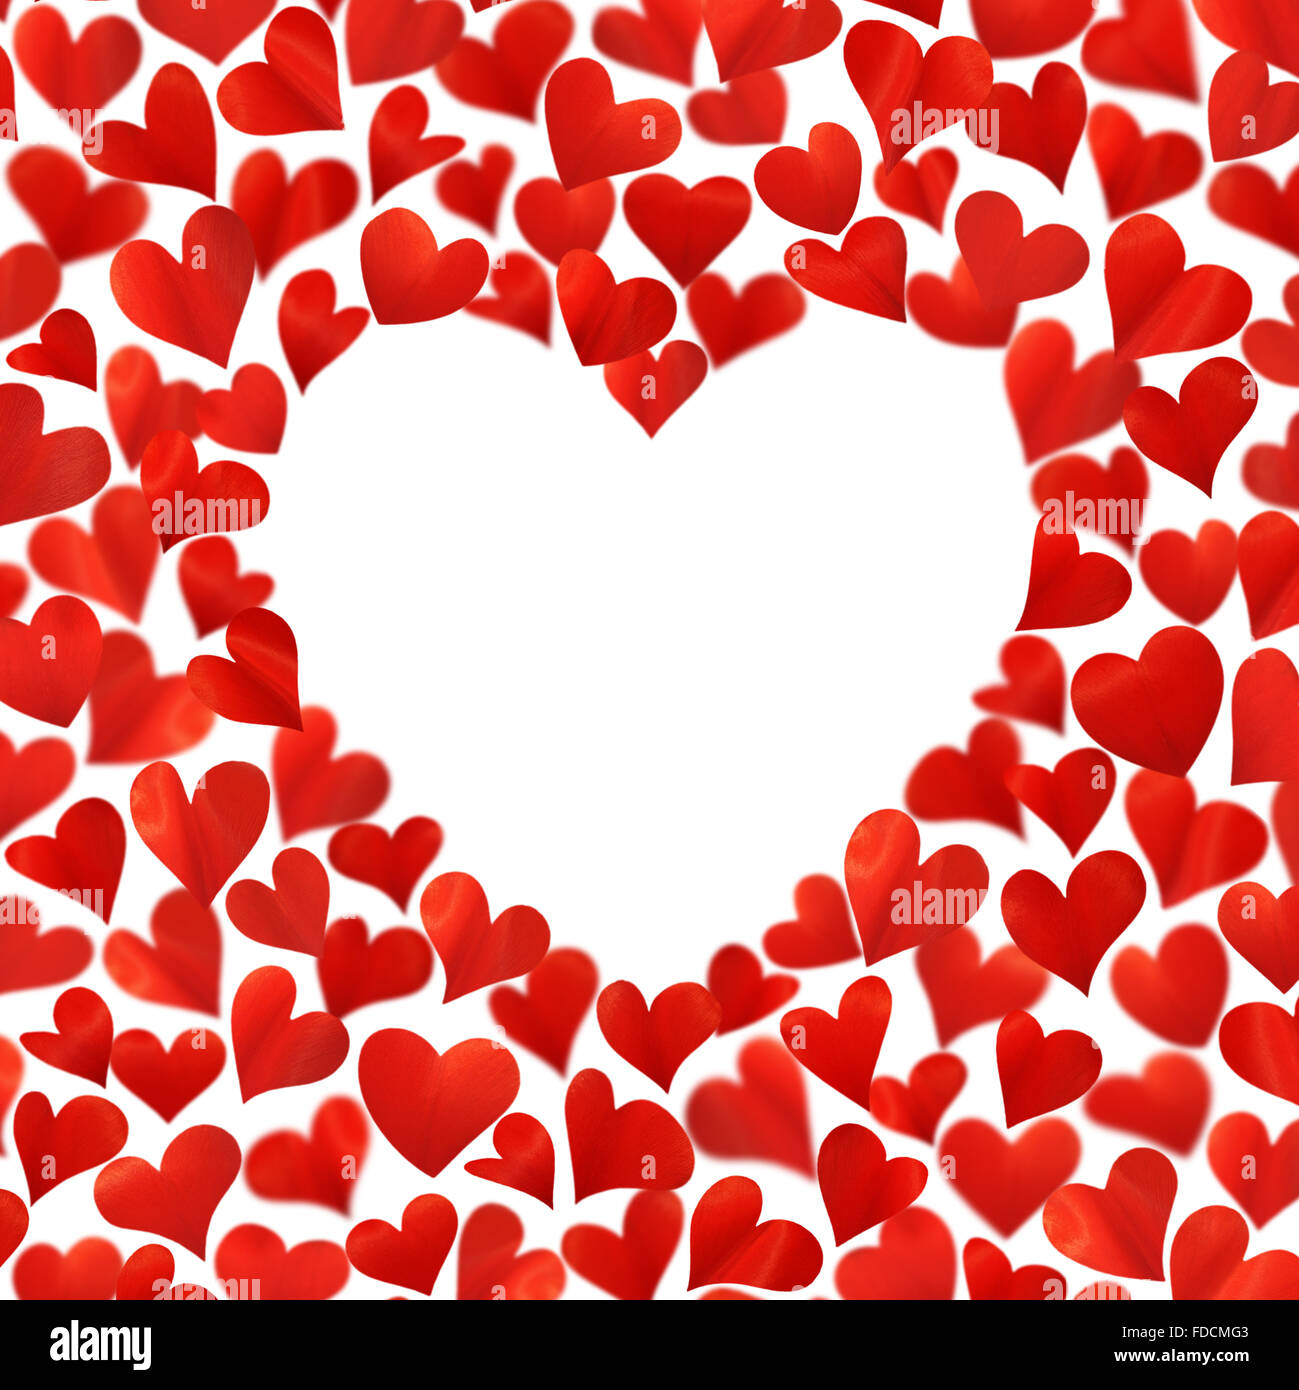 Fondo con corazones rojos en 3D, un espacio vacío para el texto en forma de corazón, aislado sobre fondo blanco, tarjeta de cumpleaños, espacio de copia Foto de stock